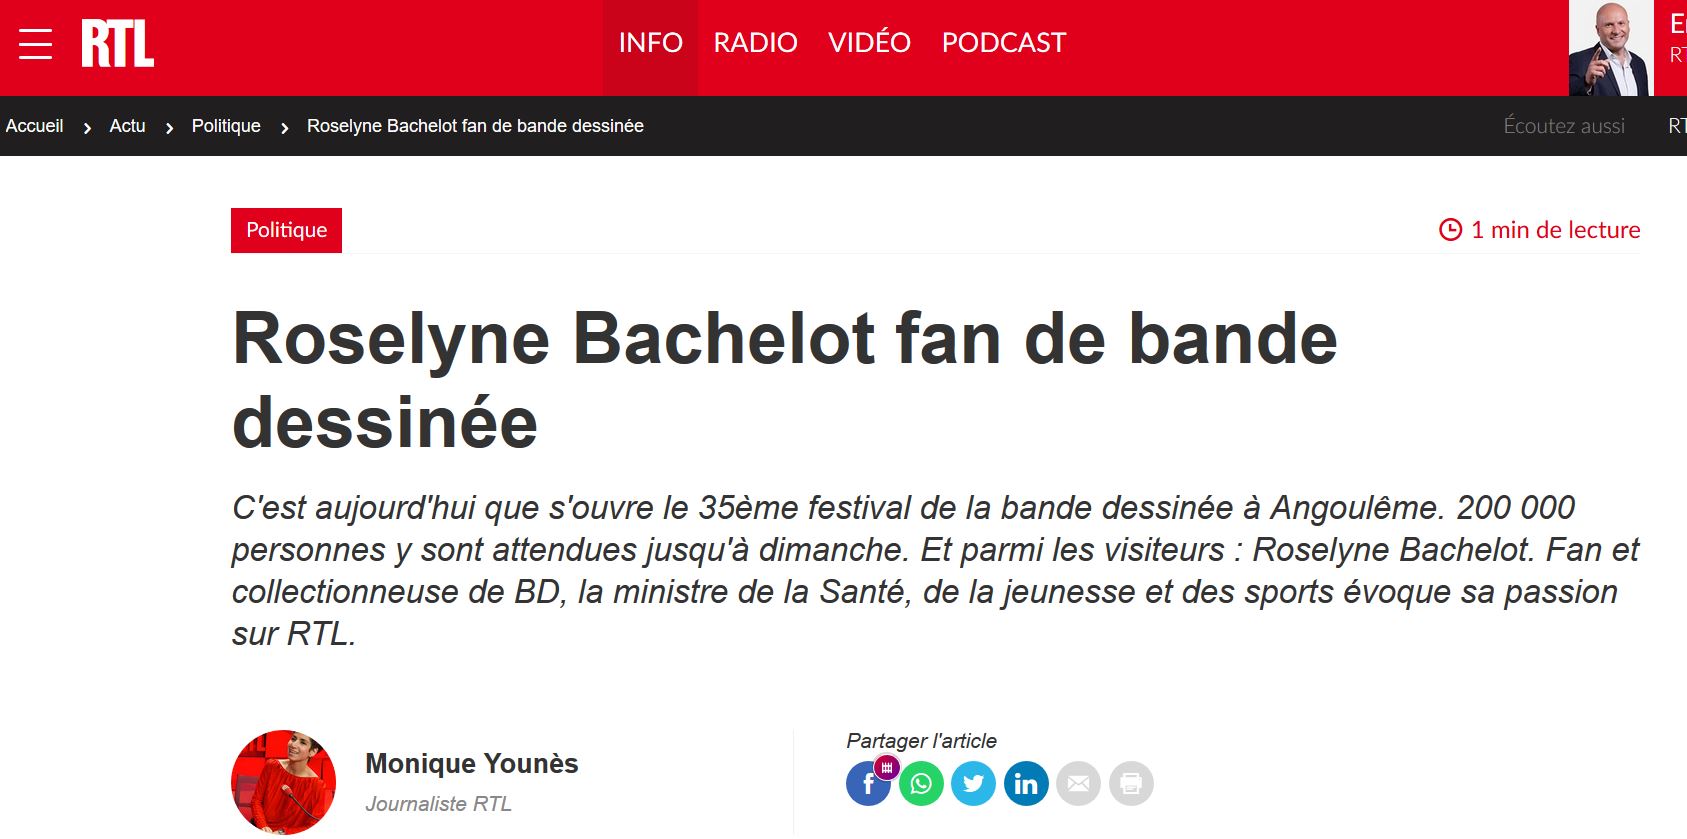 Roselyne Bachelot, une ministre de la culture fan de BD